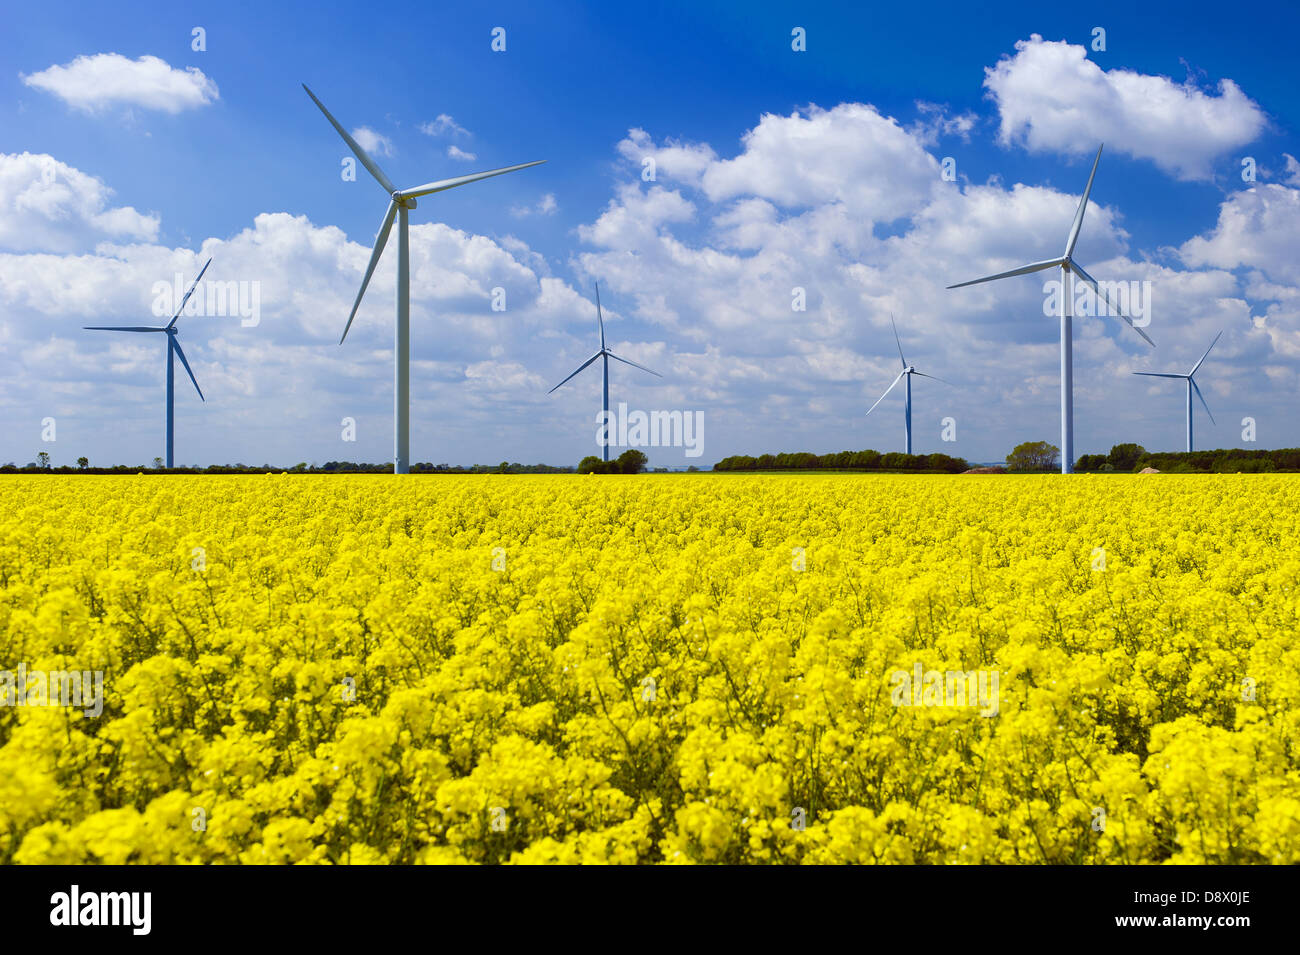 Erneuerbare Energien wind turbine Farmen in einem Feld in Yorkshire, Gelbe Raps in voller Blüte vor einem blauen Himmel mit weißen Wolken über berücksichtigt. Stockfoto